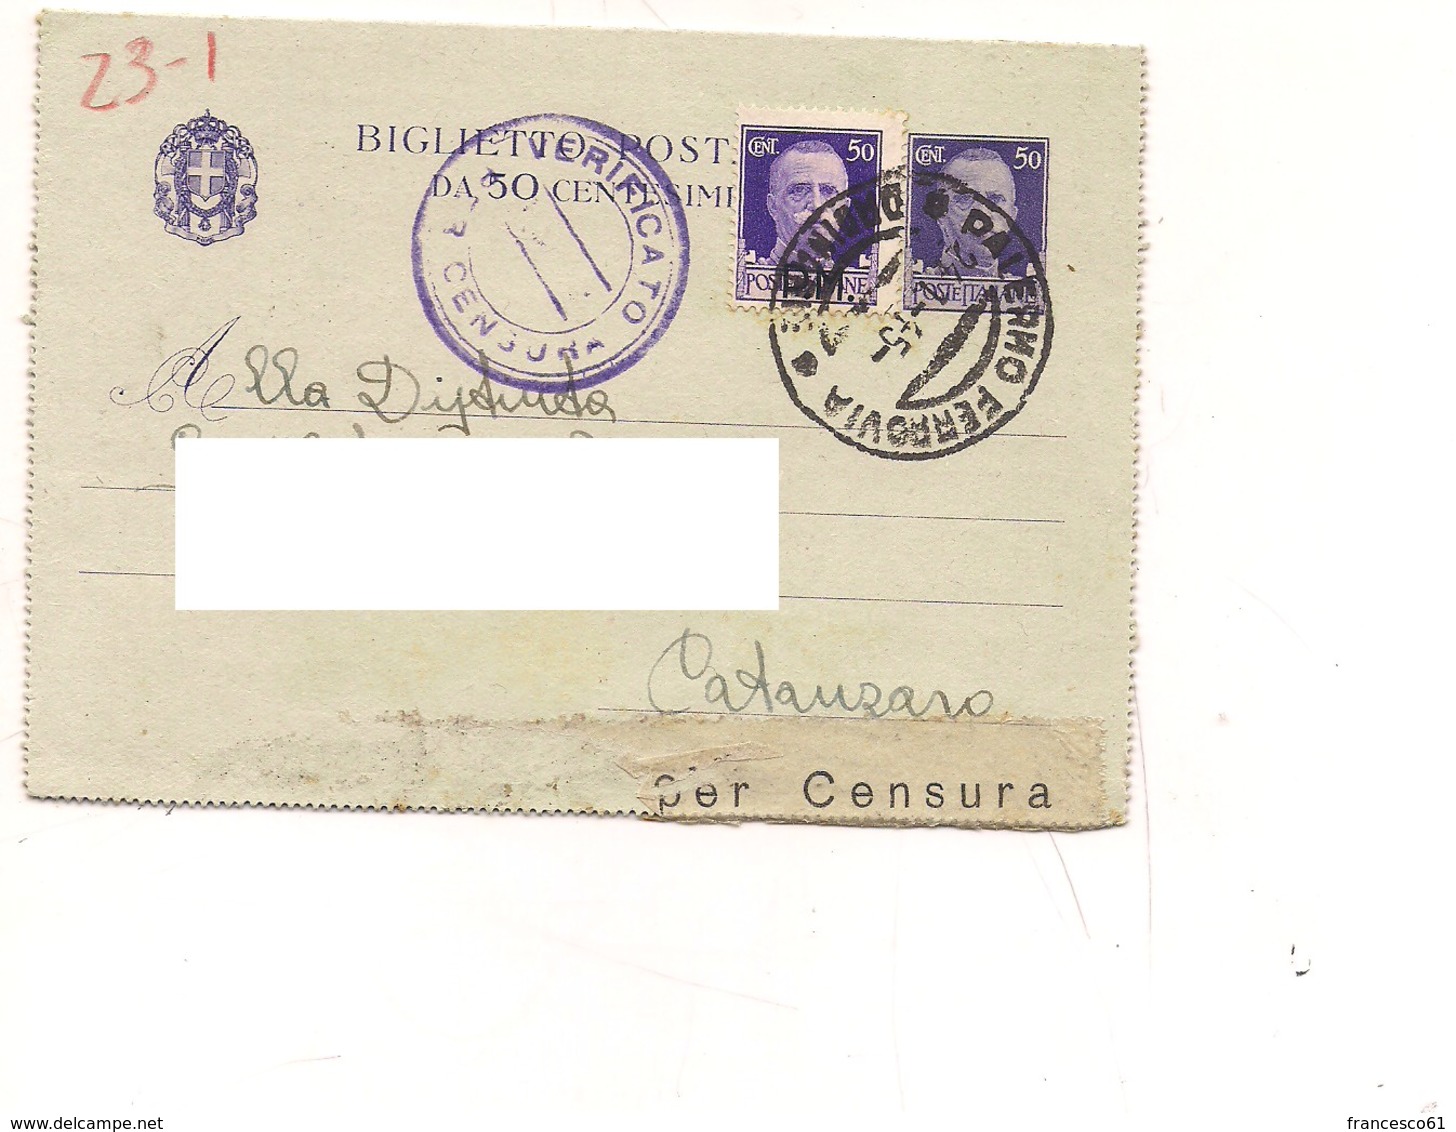 3570) Biglietto Postale 50c Imperiale + Gemello SOVRASTAMPATO PM  24-1-45 PALERMO CATANZARO - Marcofilía